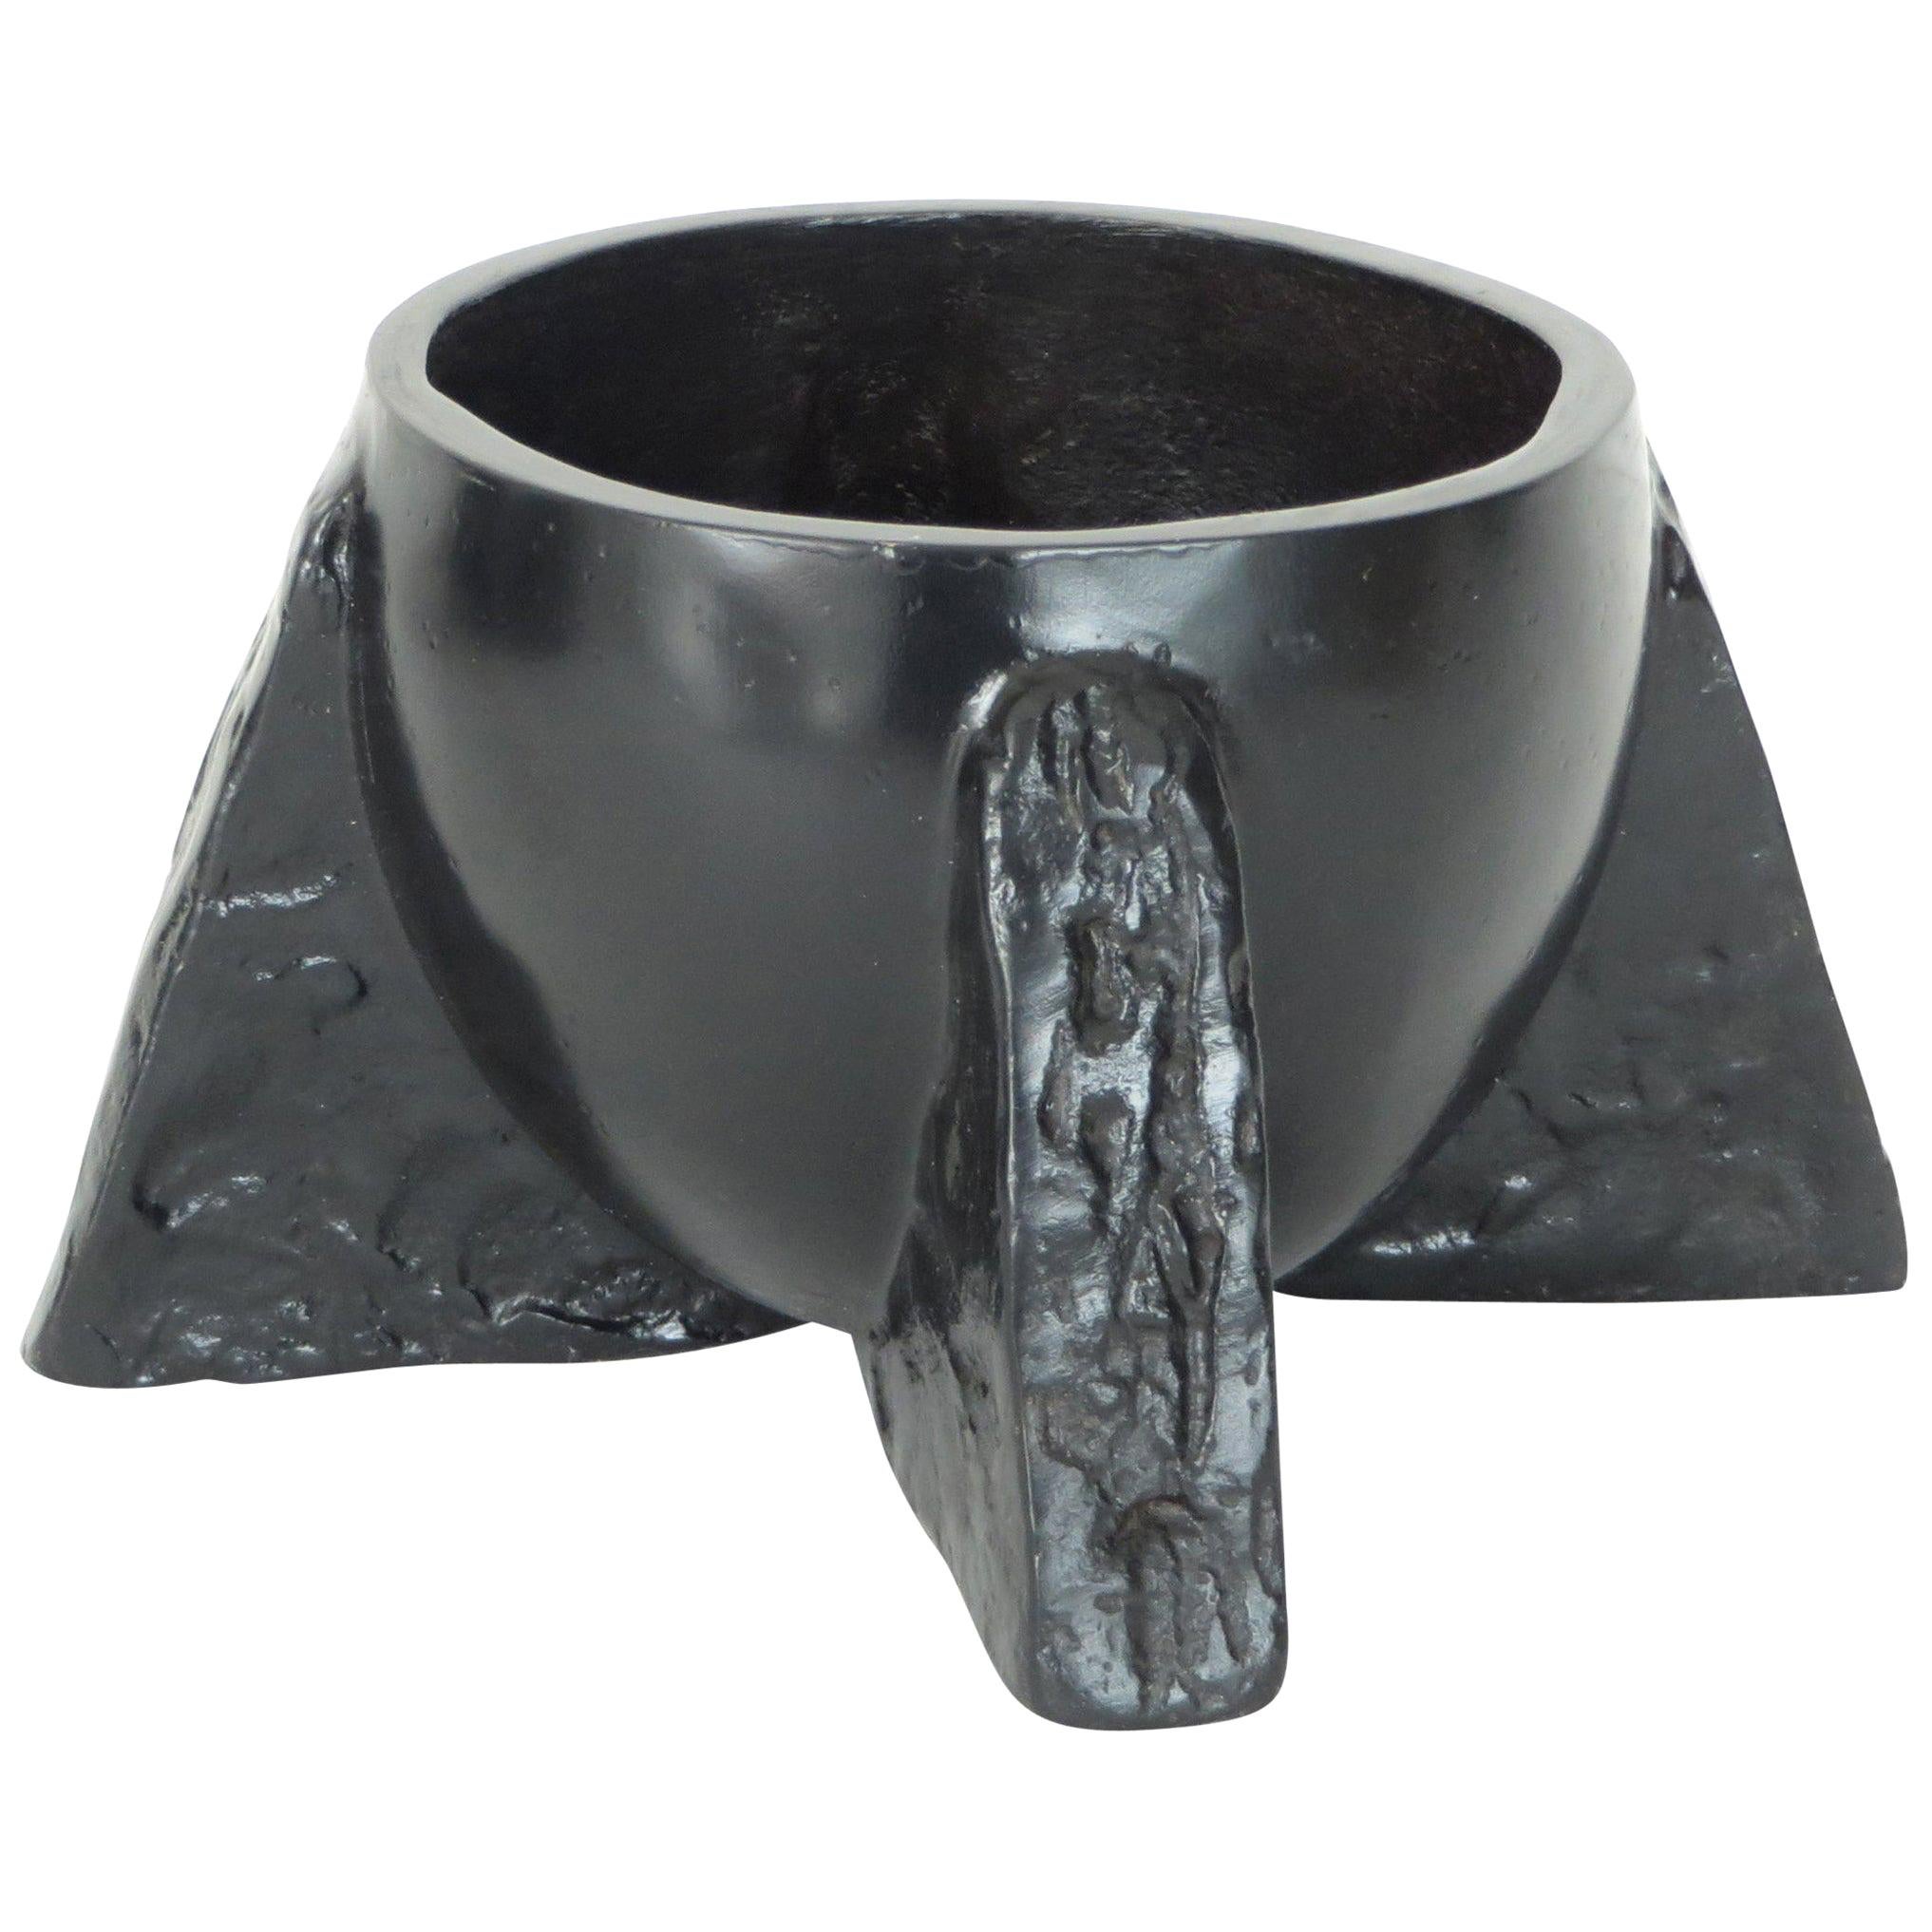 Vase coupe en bronze moulé noir patiné signé Rick Owens